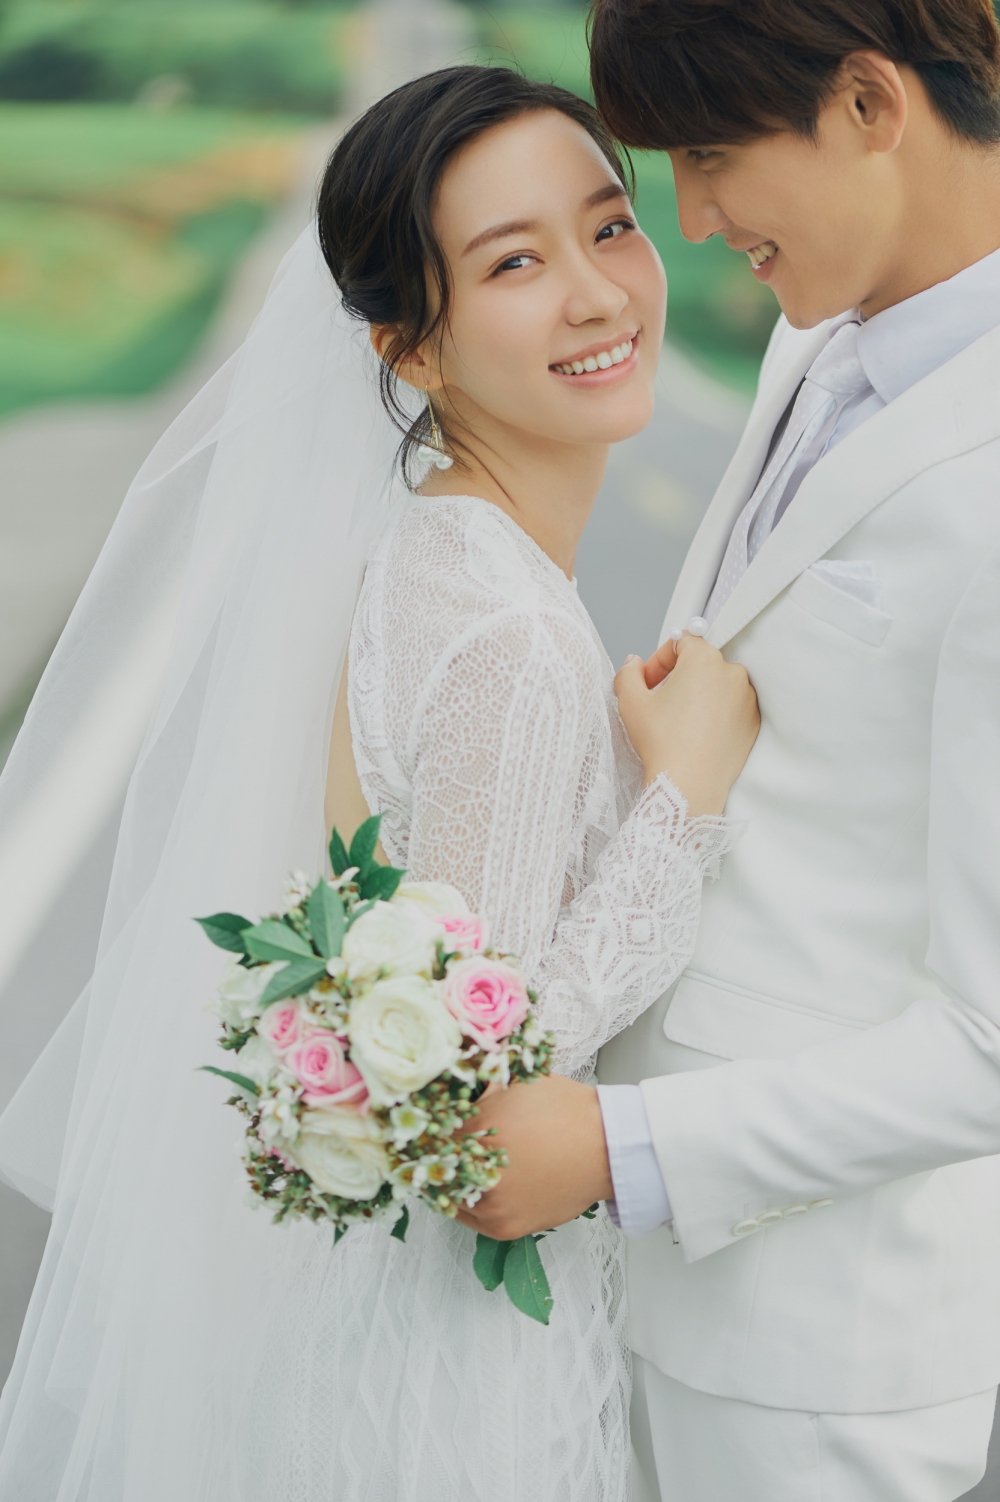 小清新日系风格的夫妻旅拍大自然婚纱摄影图片